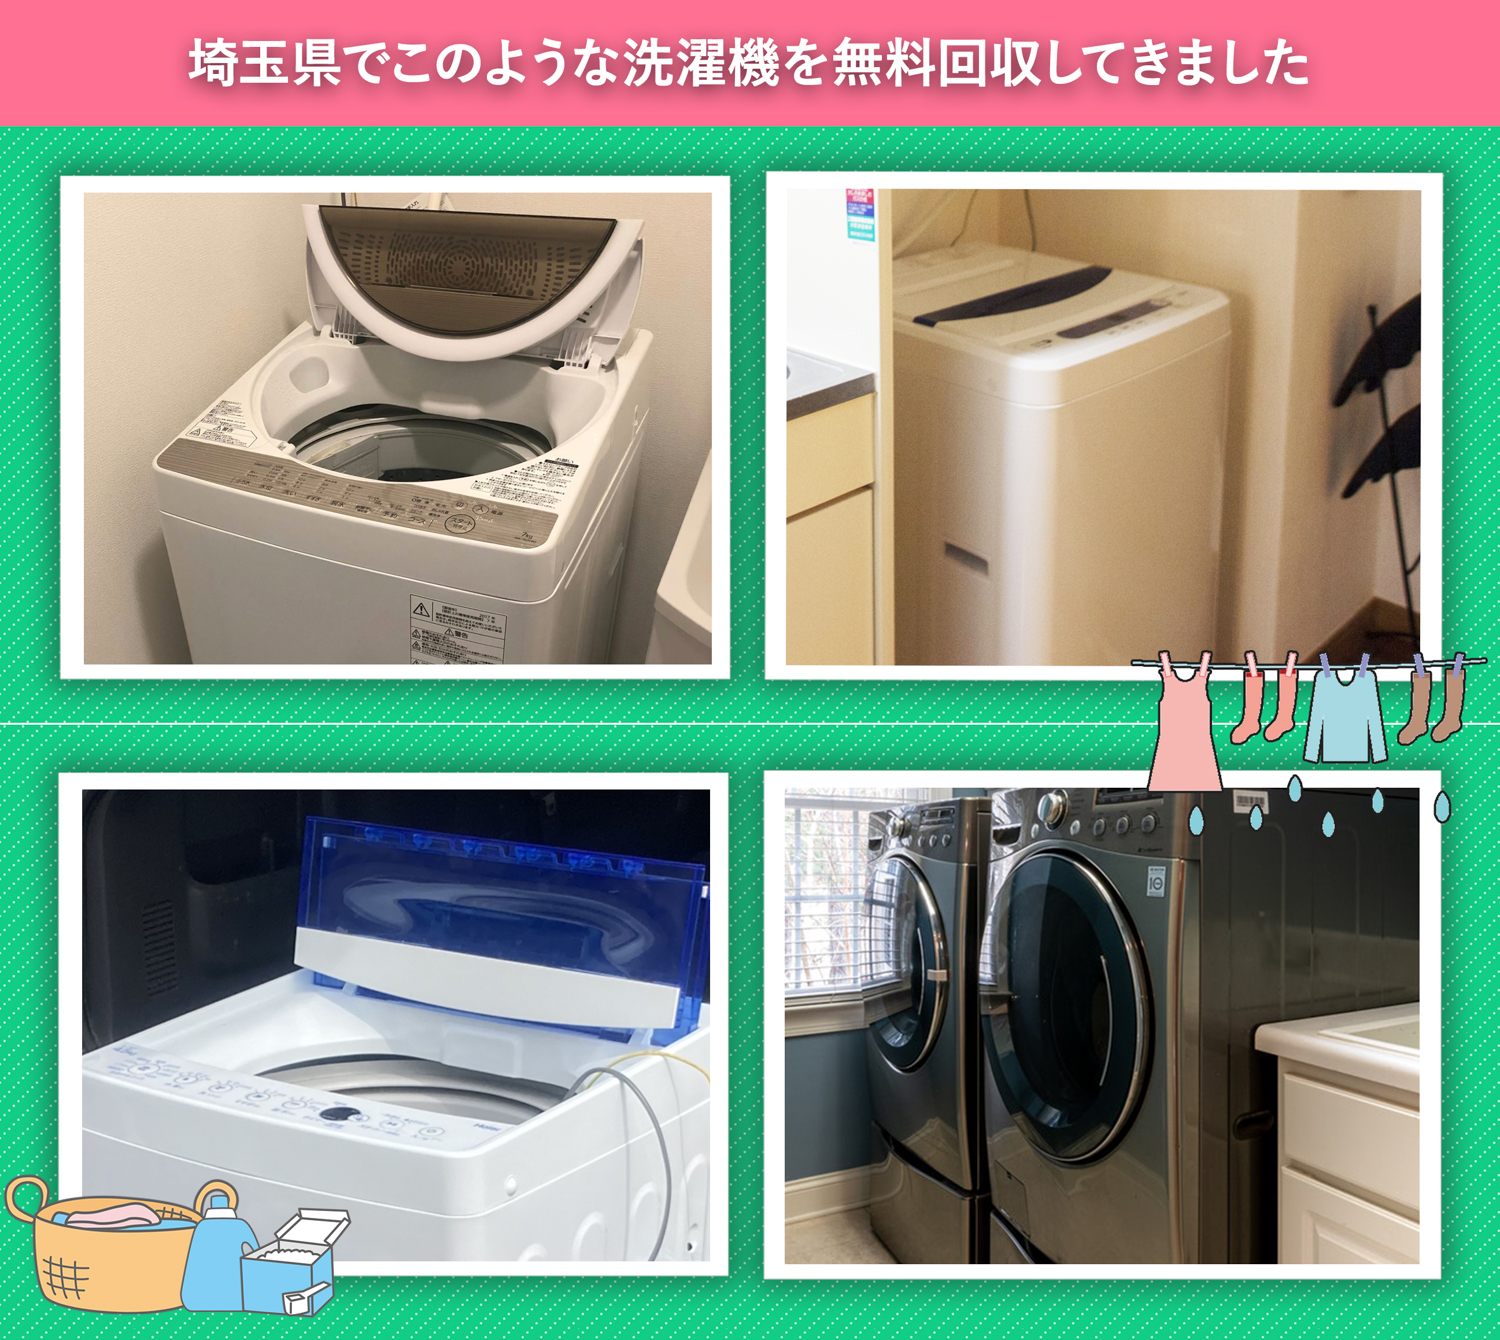 埼玉県でこのような洗濯機を無料回収してきました。